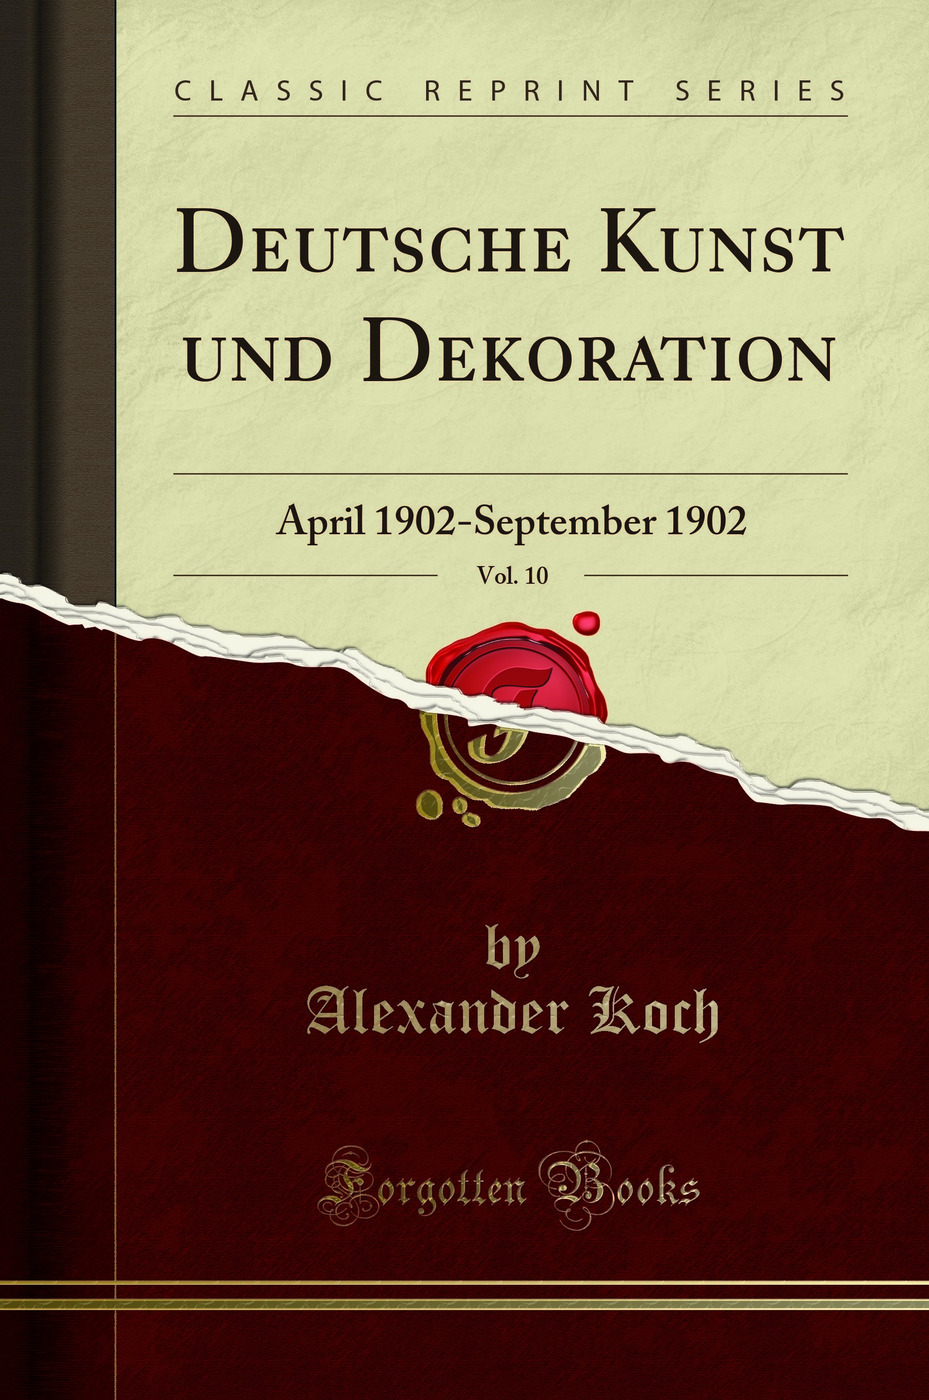 Deutsche Kunst und Dekoration, Vol. 10: April 1902-September 1902 - Alexander Koch